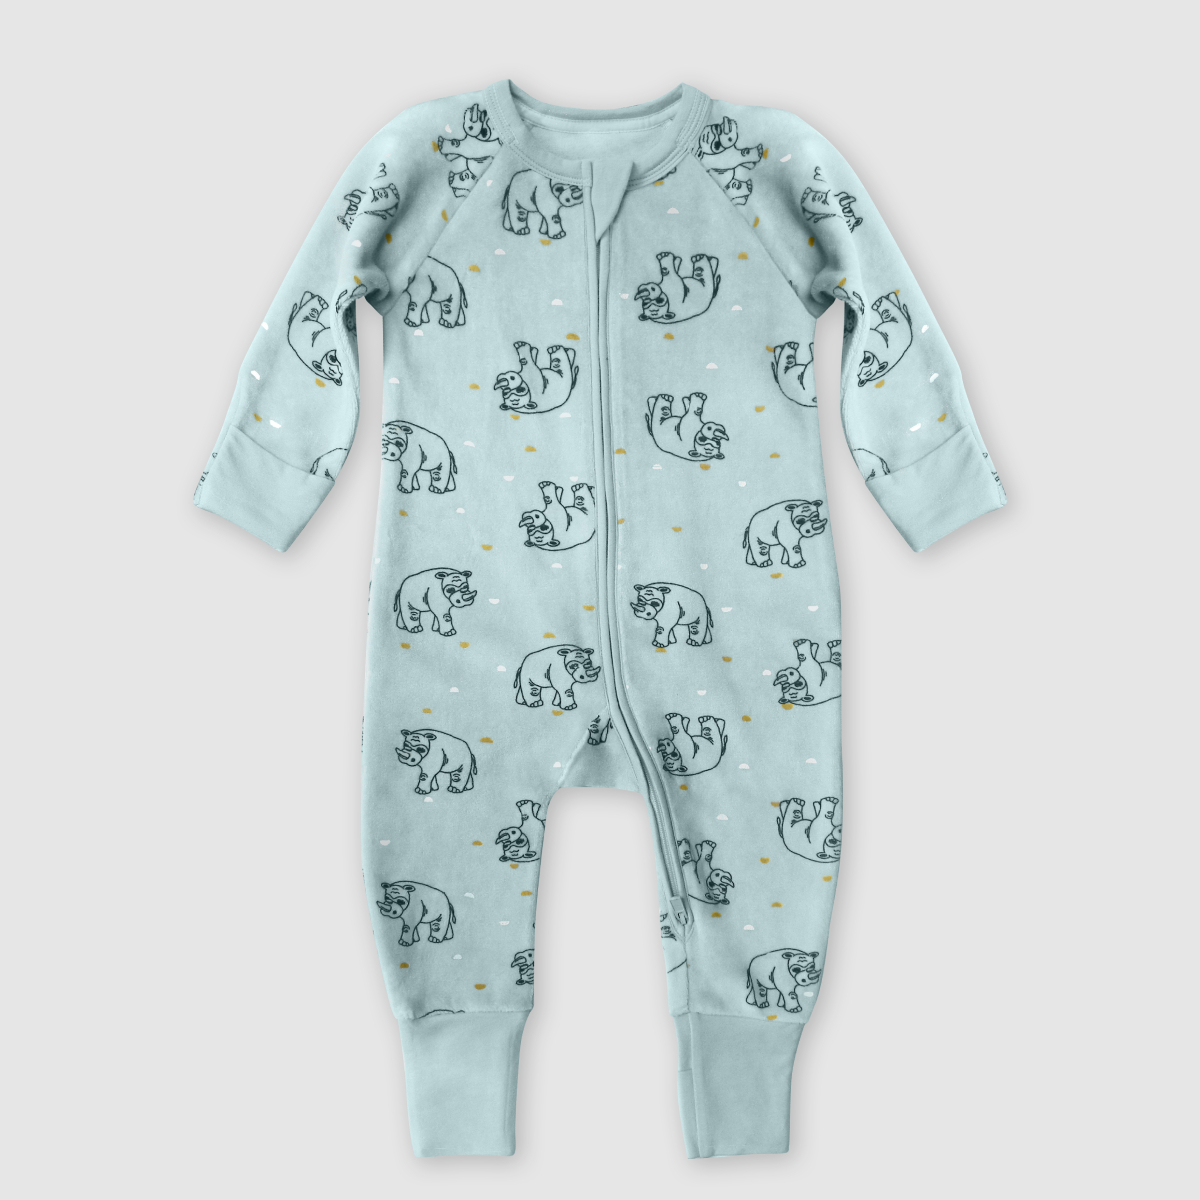 Pyjama bébé zippé coton stretch bleu clair imprimé pluie d'étoile